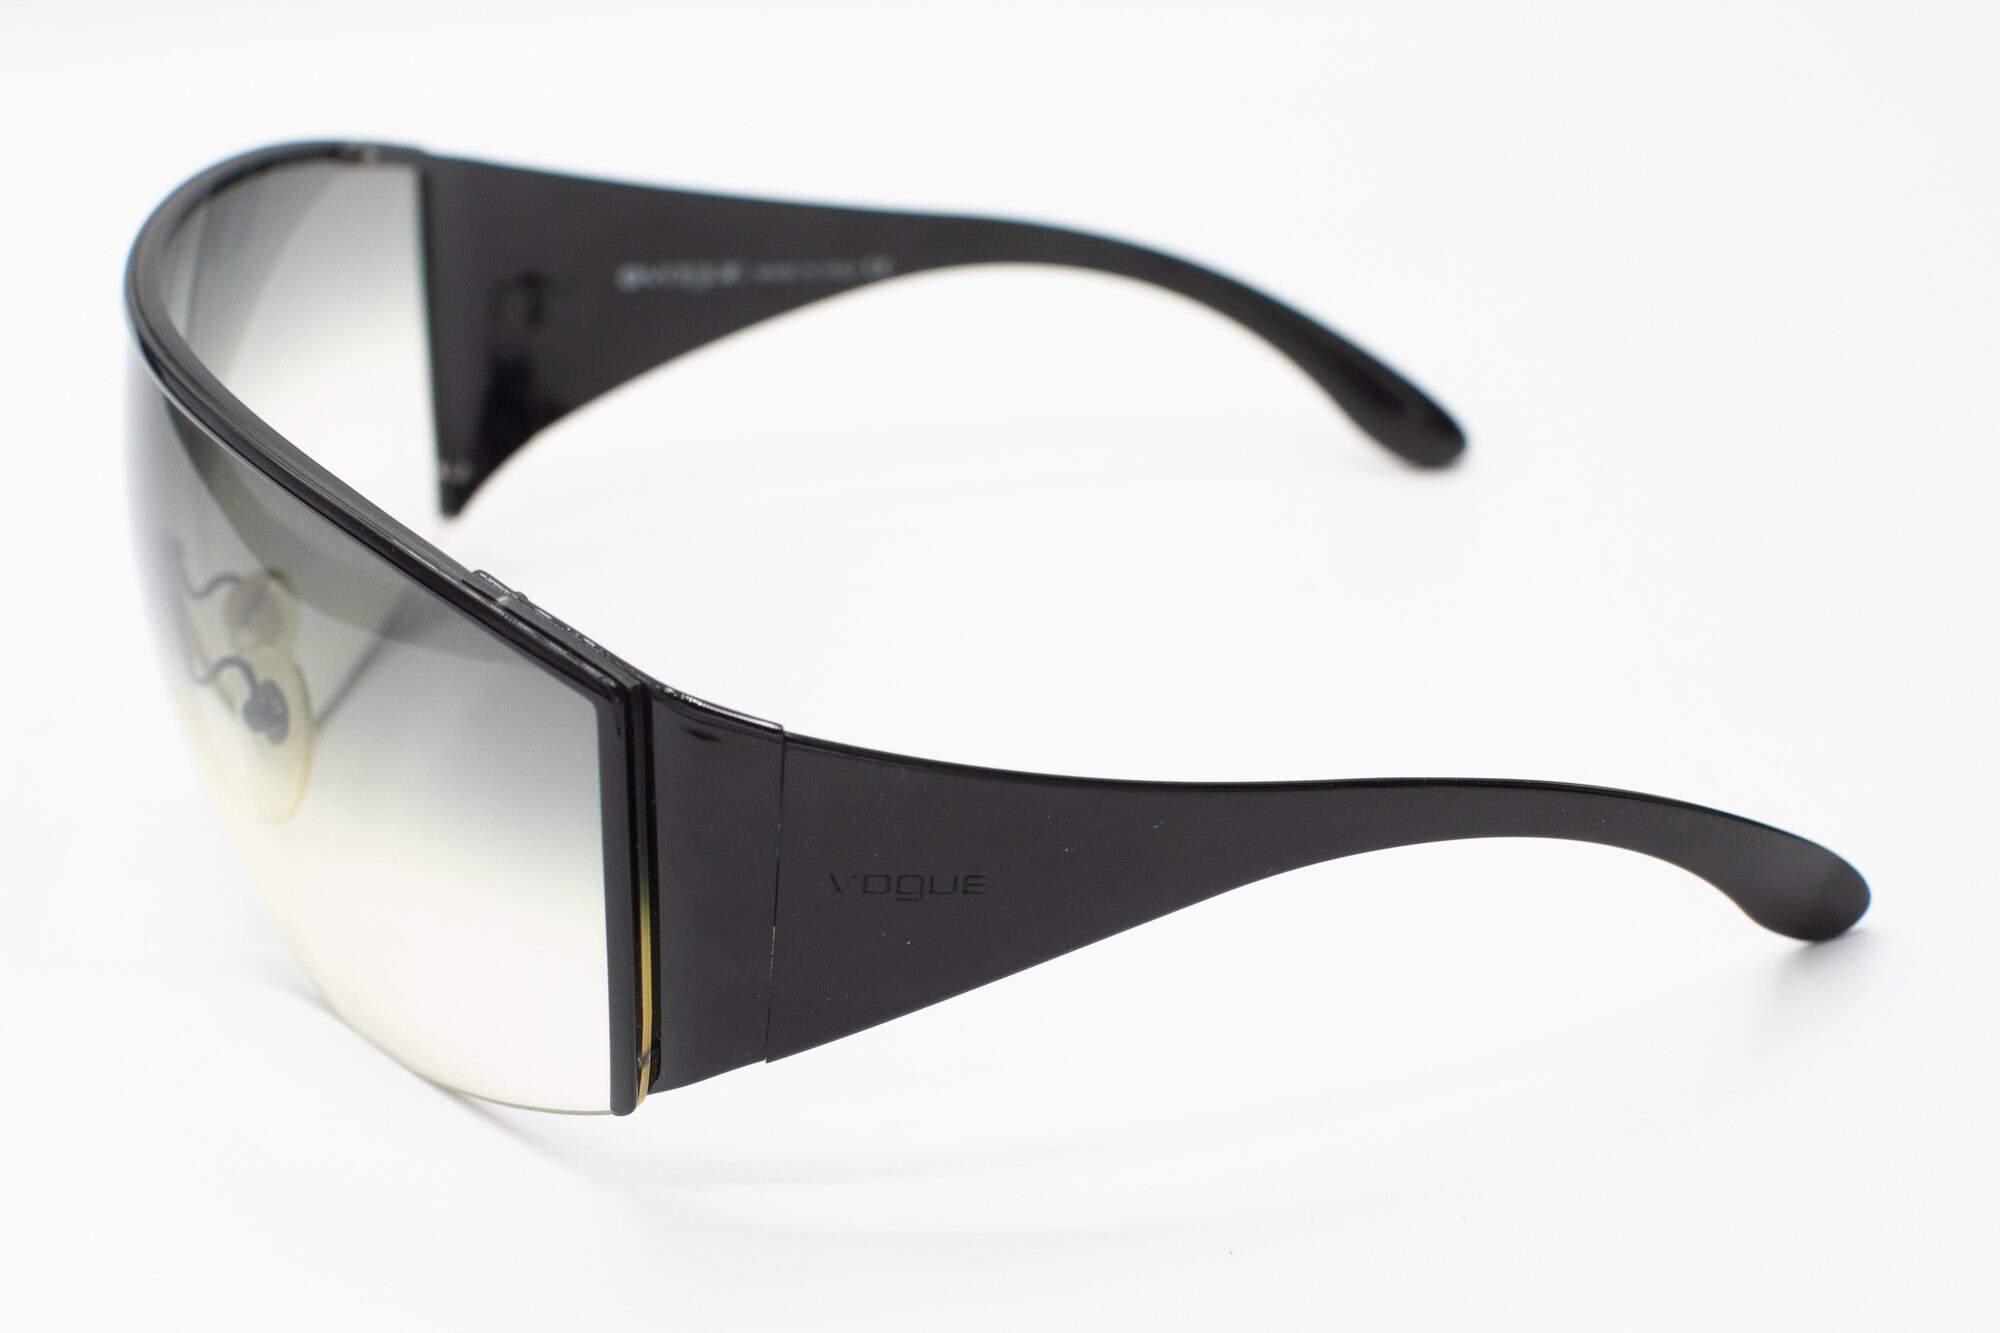 Accessoires Zonnebrillen & Eyewear Zonnebrillen Brede schild zonnebril 2000s zwart metalen halve velg frame VOGUE VO3512-s 